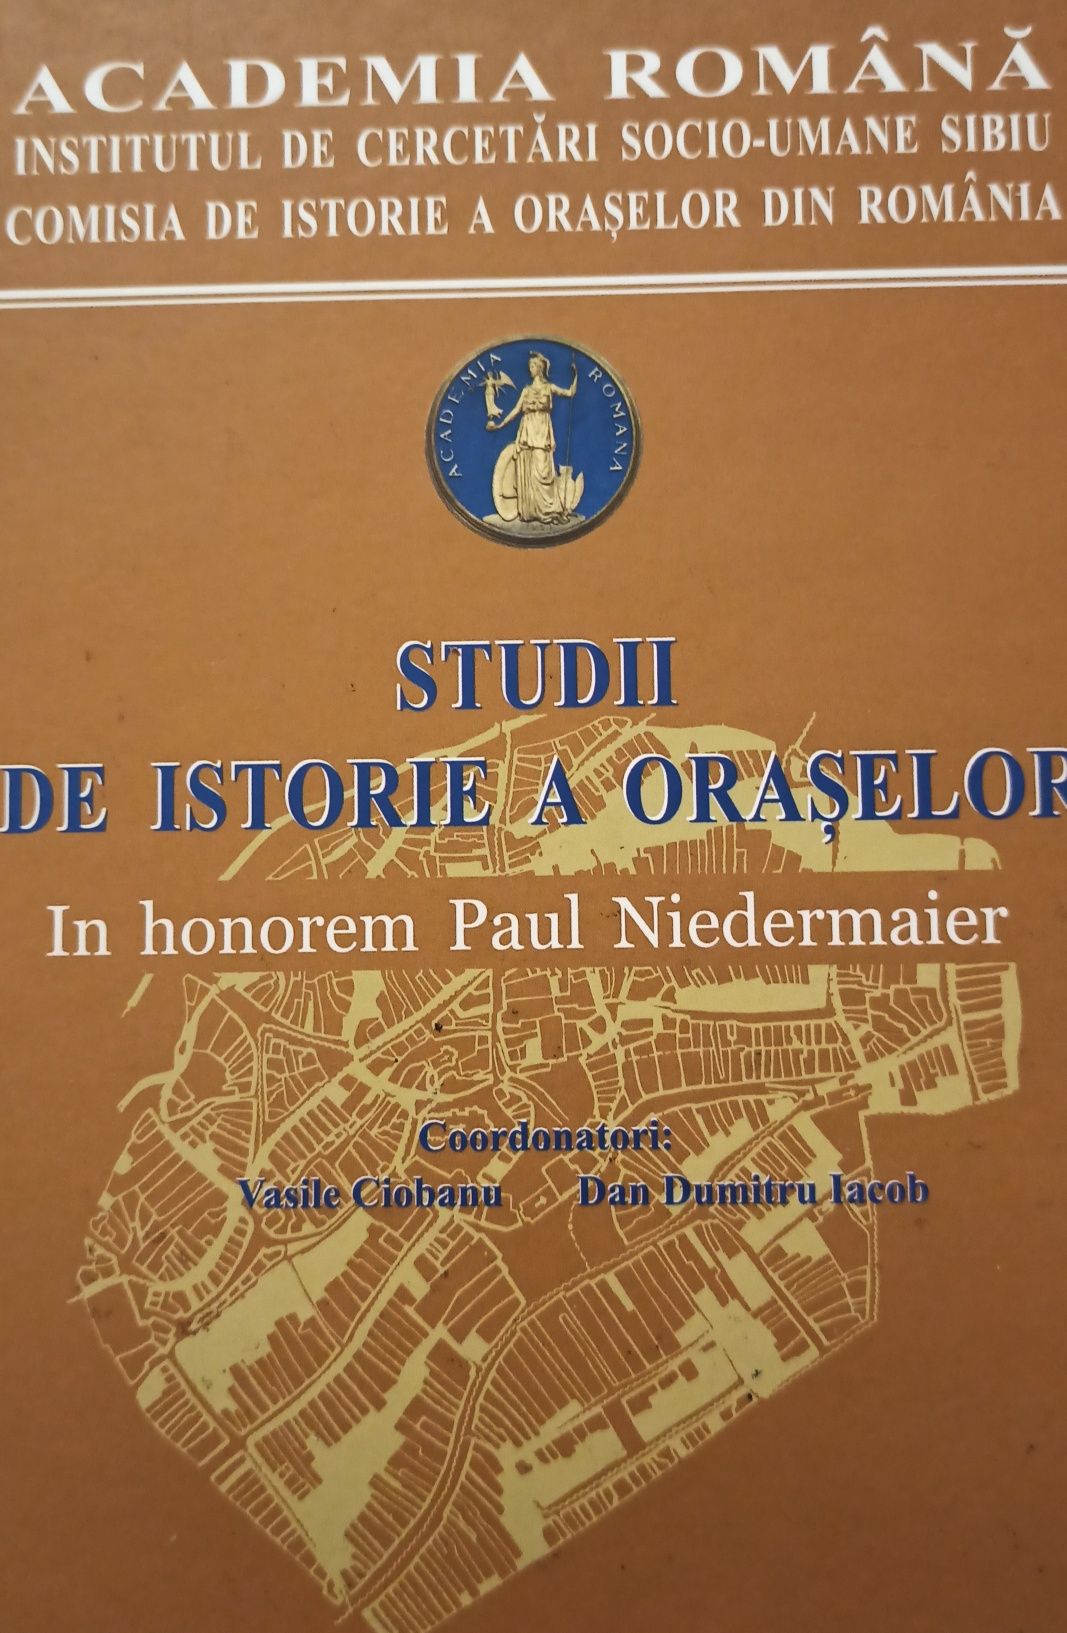 Studii de istorie a oraselor- Paul Niedermaier